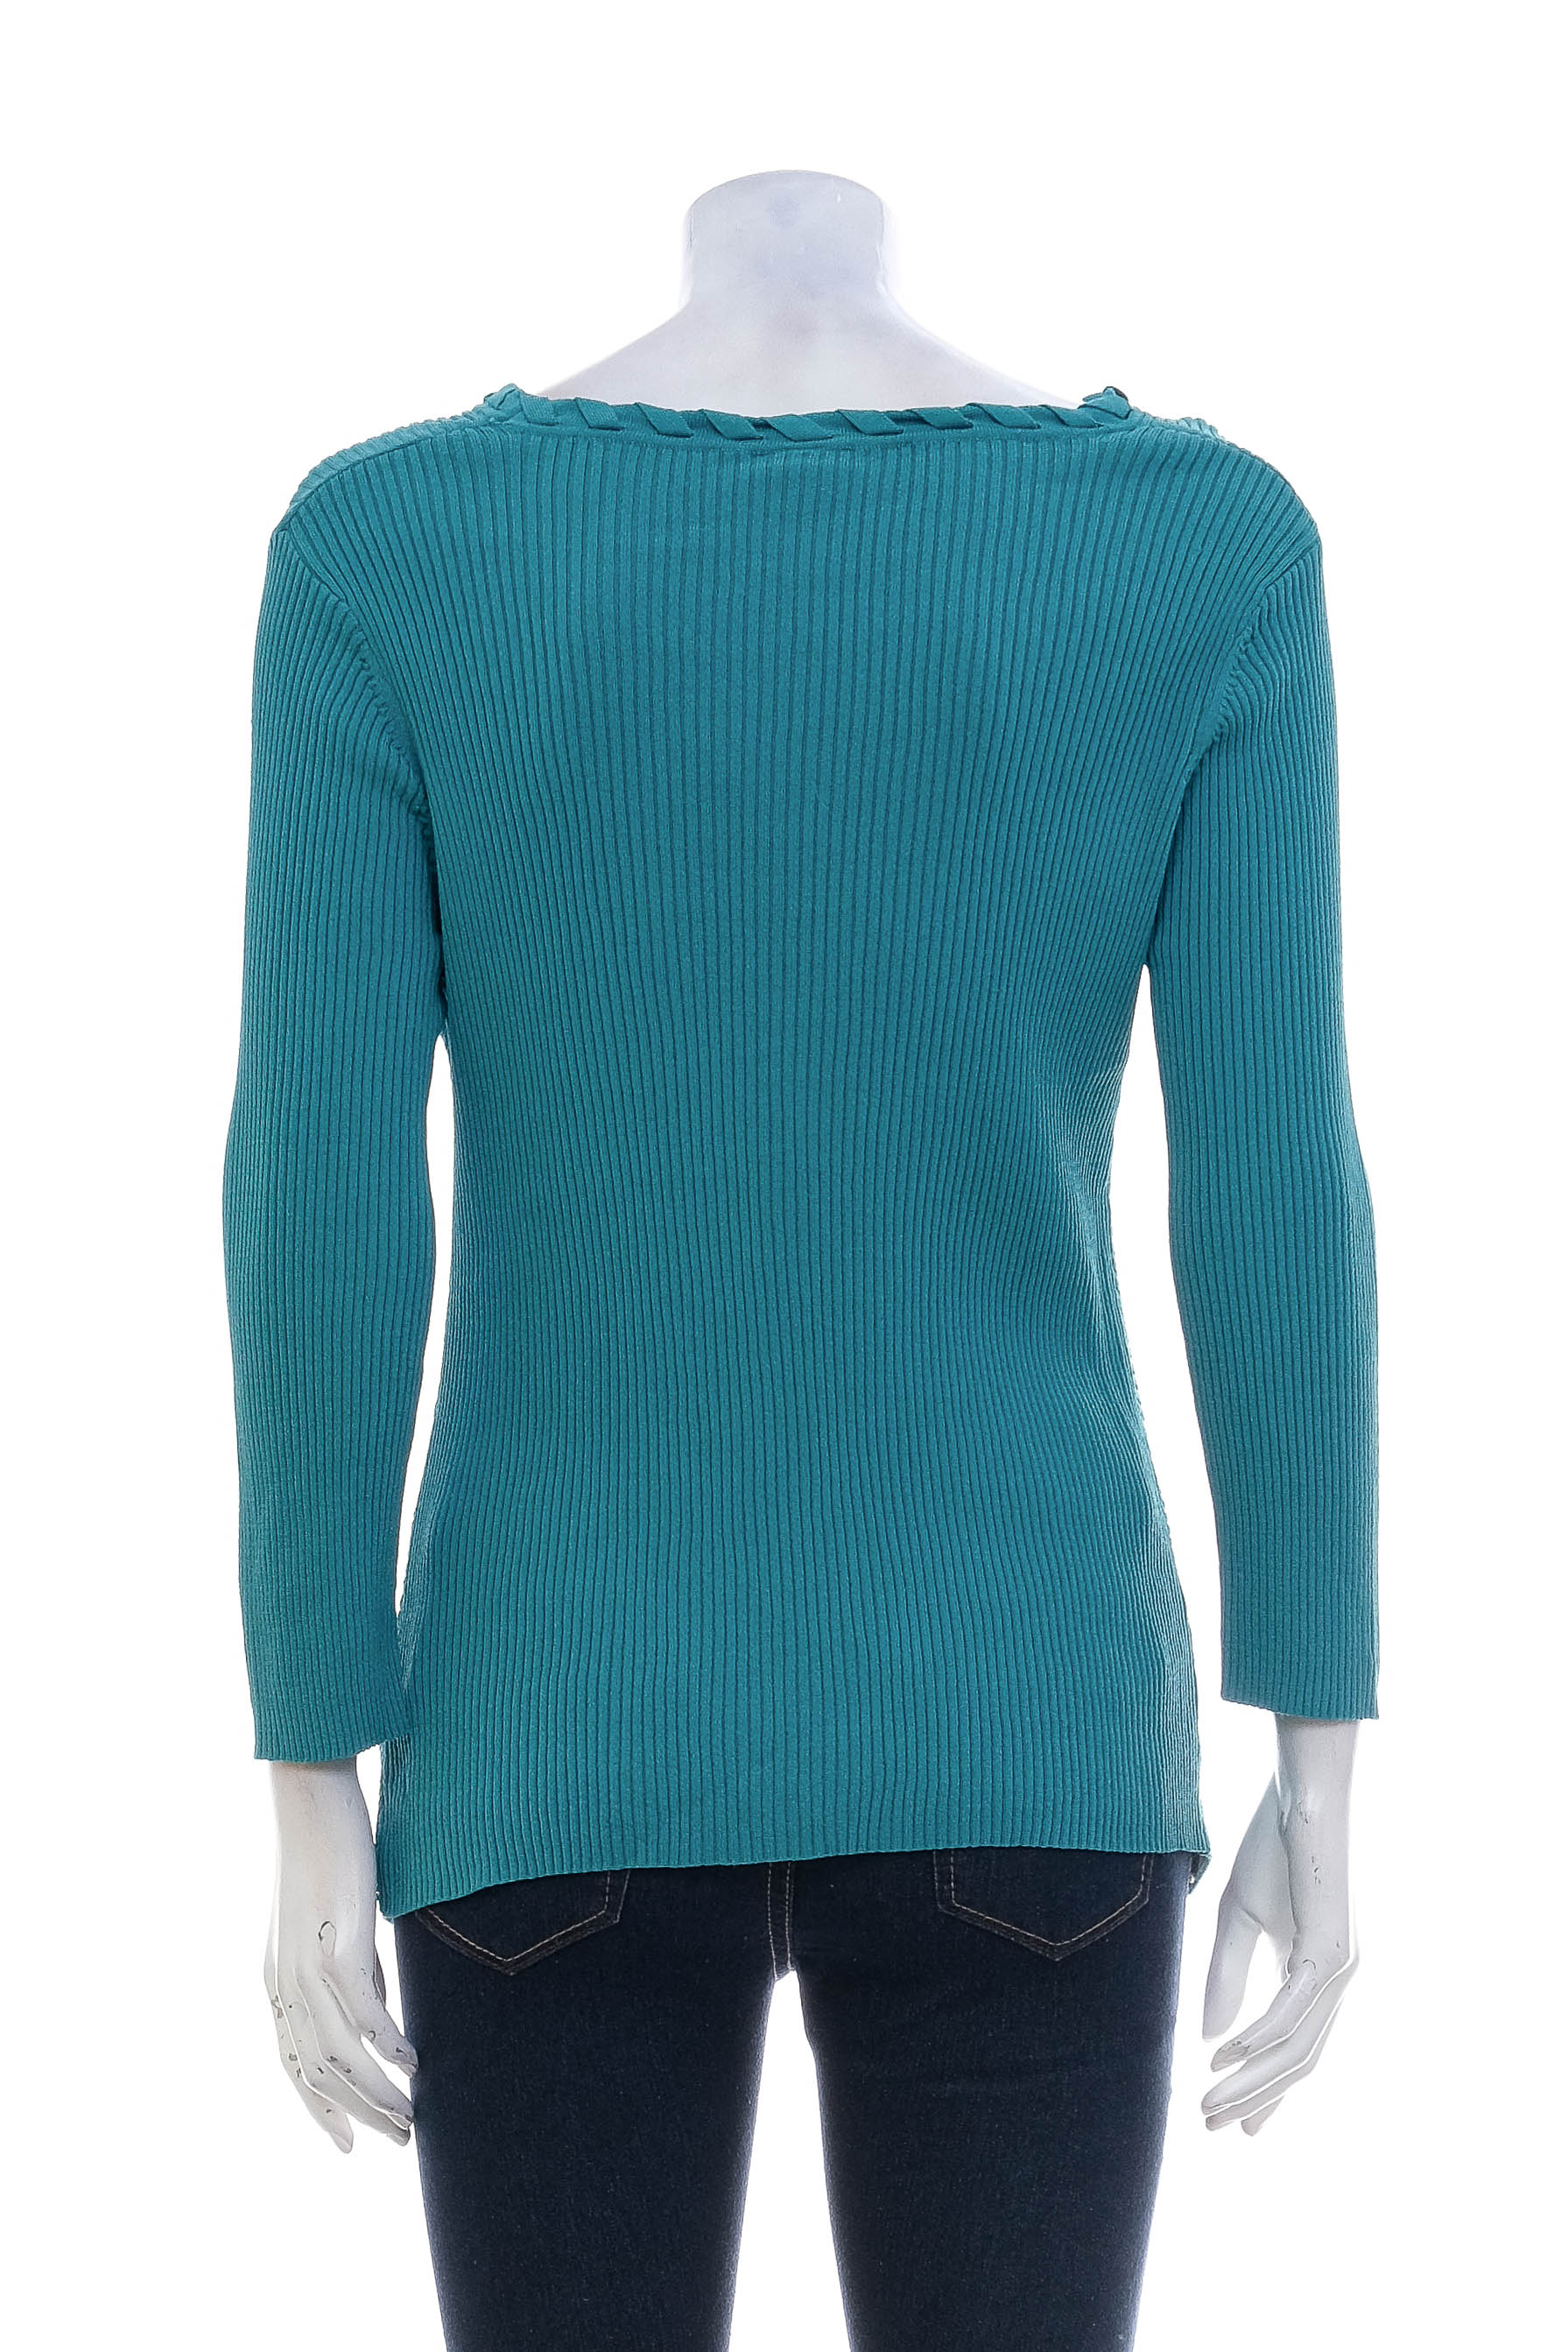 Women's sweater - Mayerline - 1